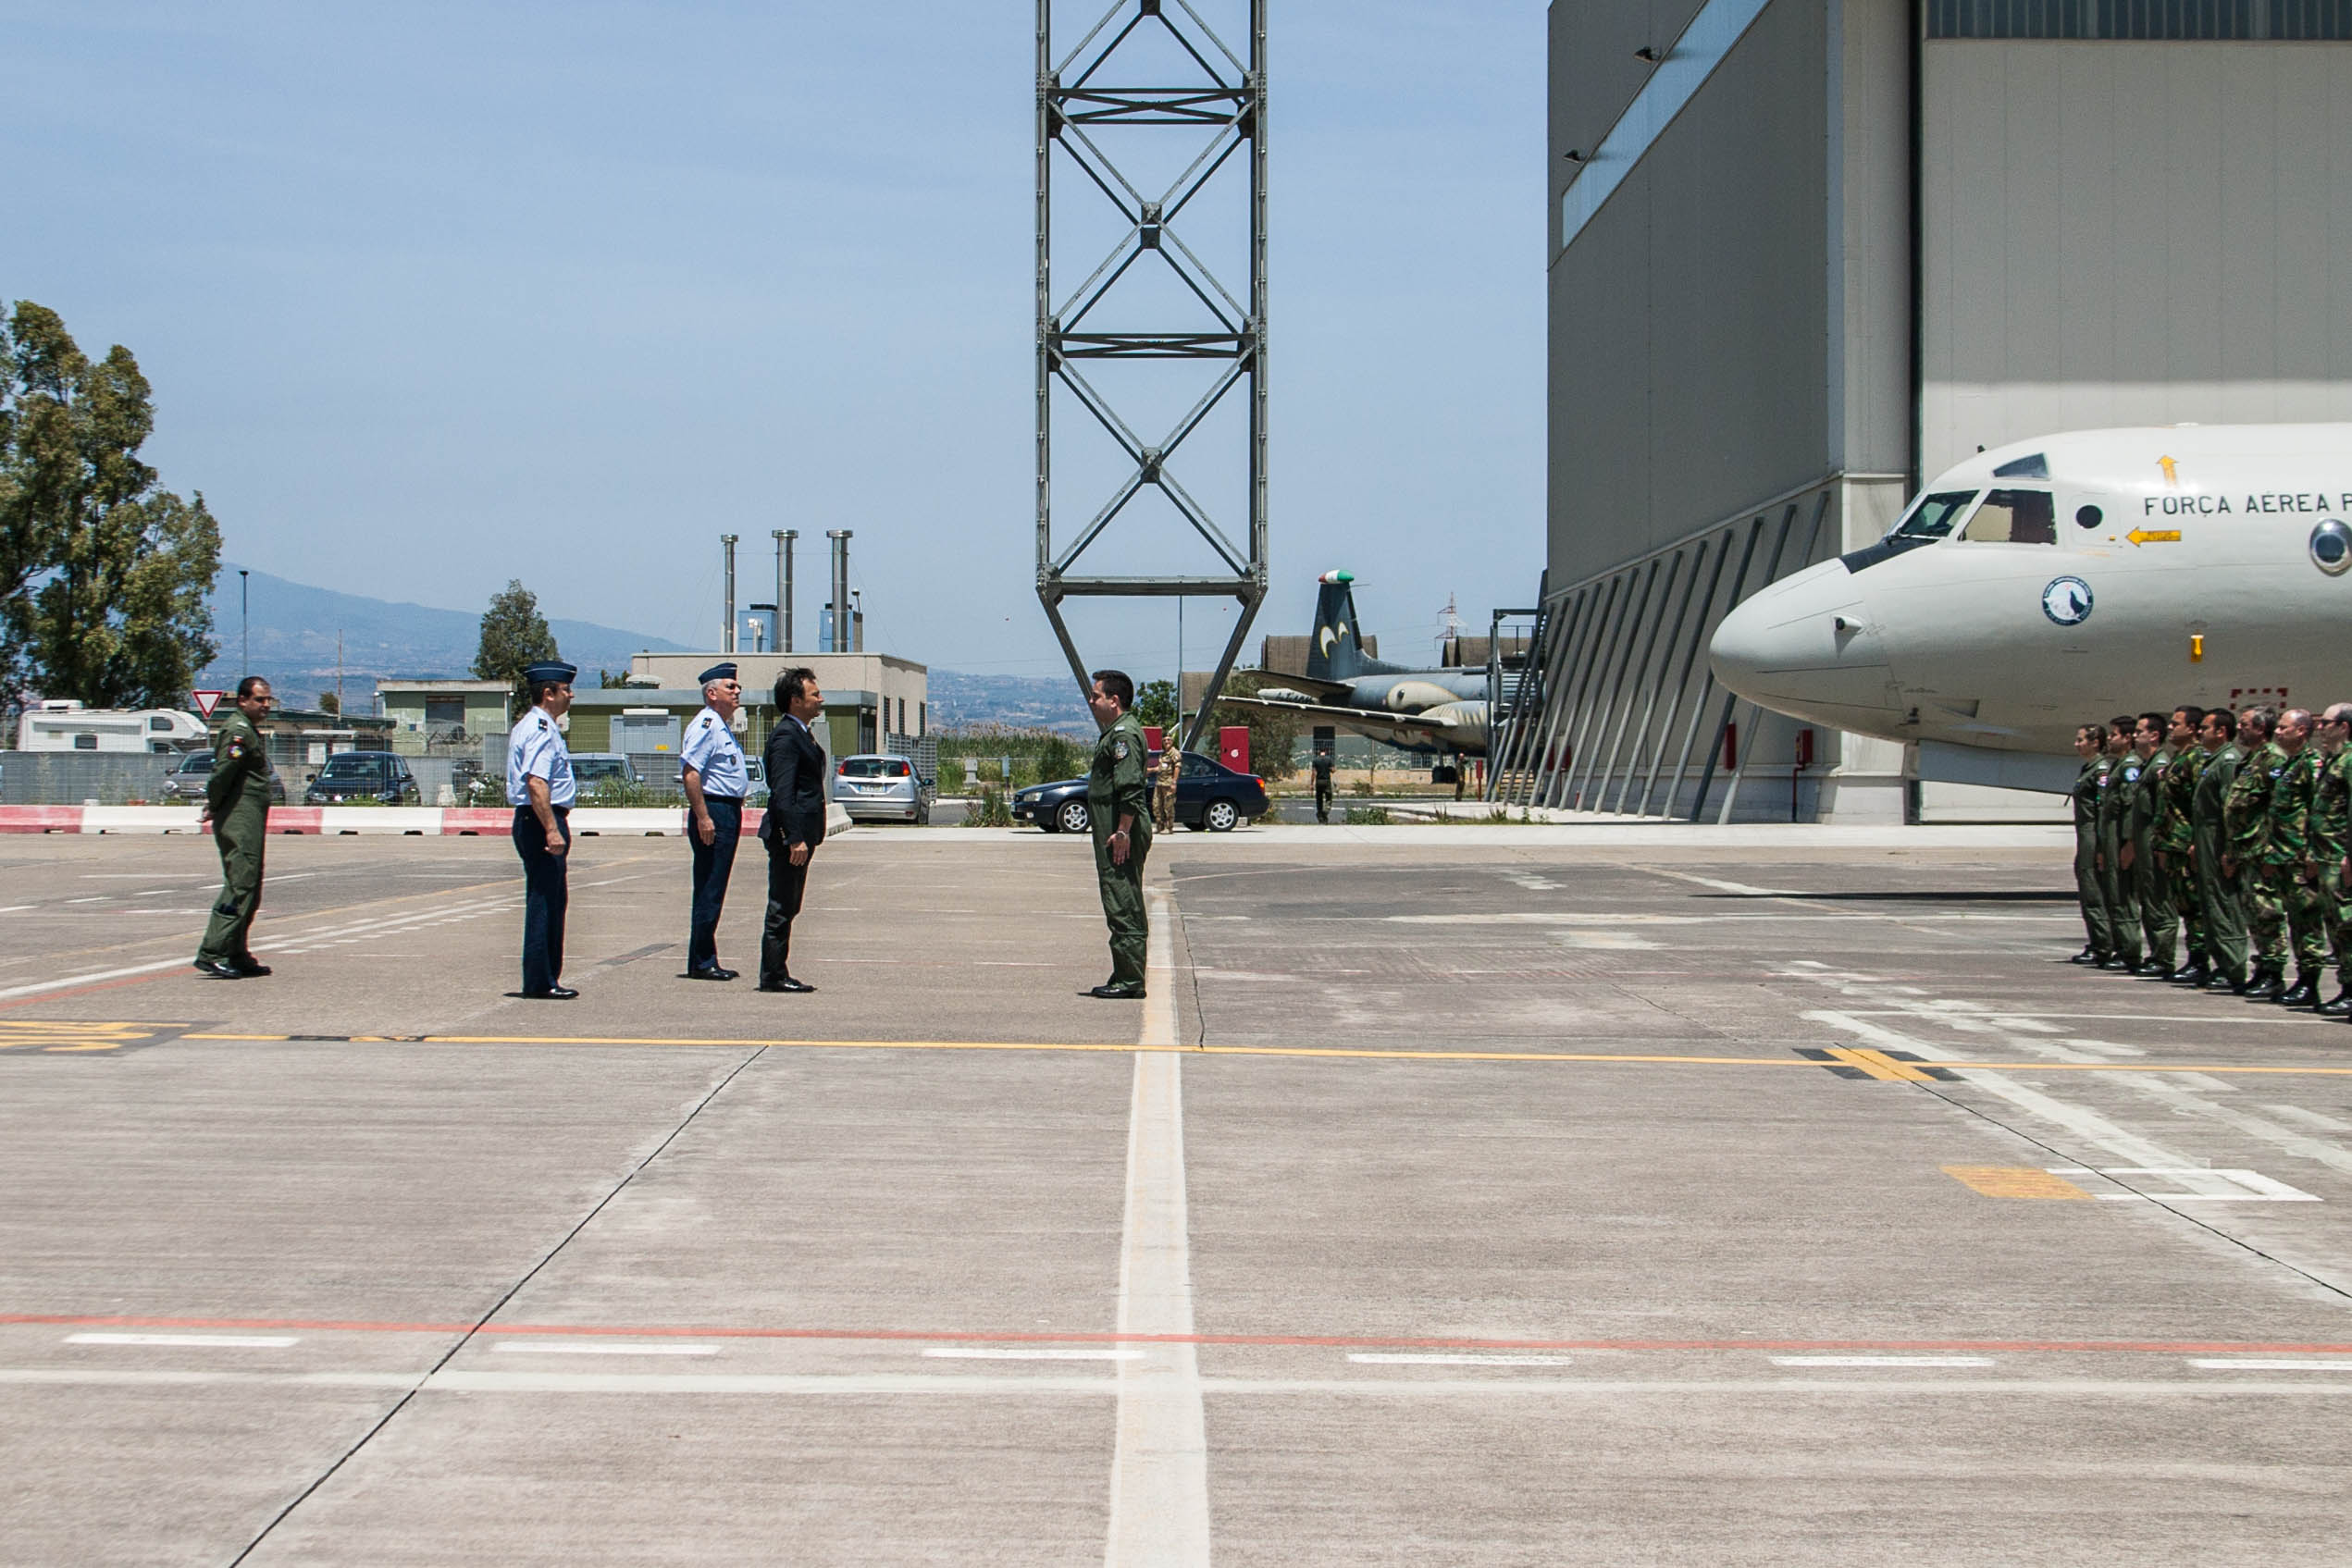 SEDN visita militares da Força Aérea destacados em Sigonella